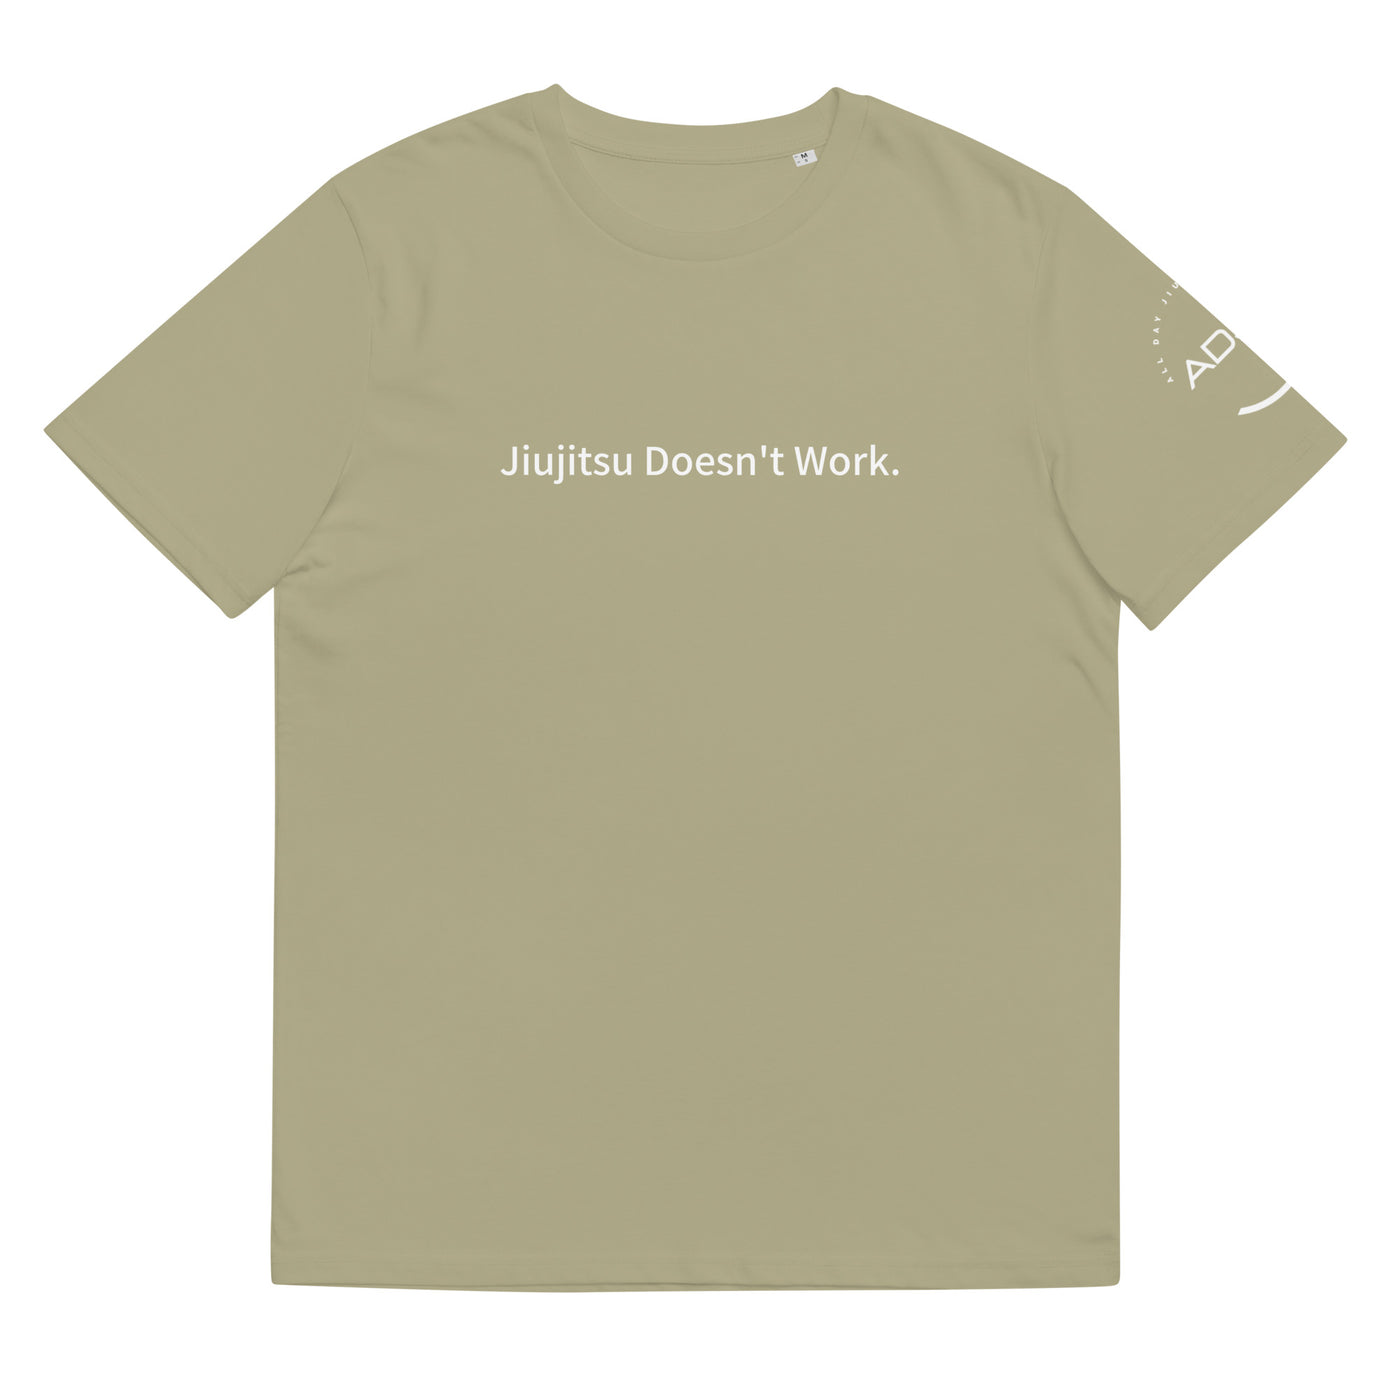 Jiujitsu Doesn't Work Cotton t-shirt